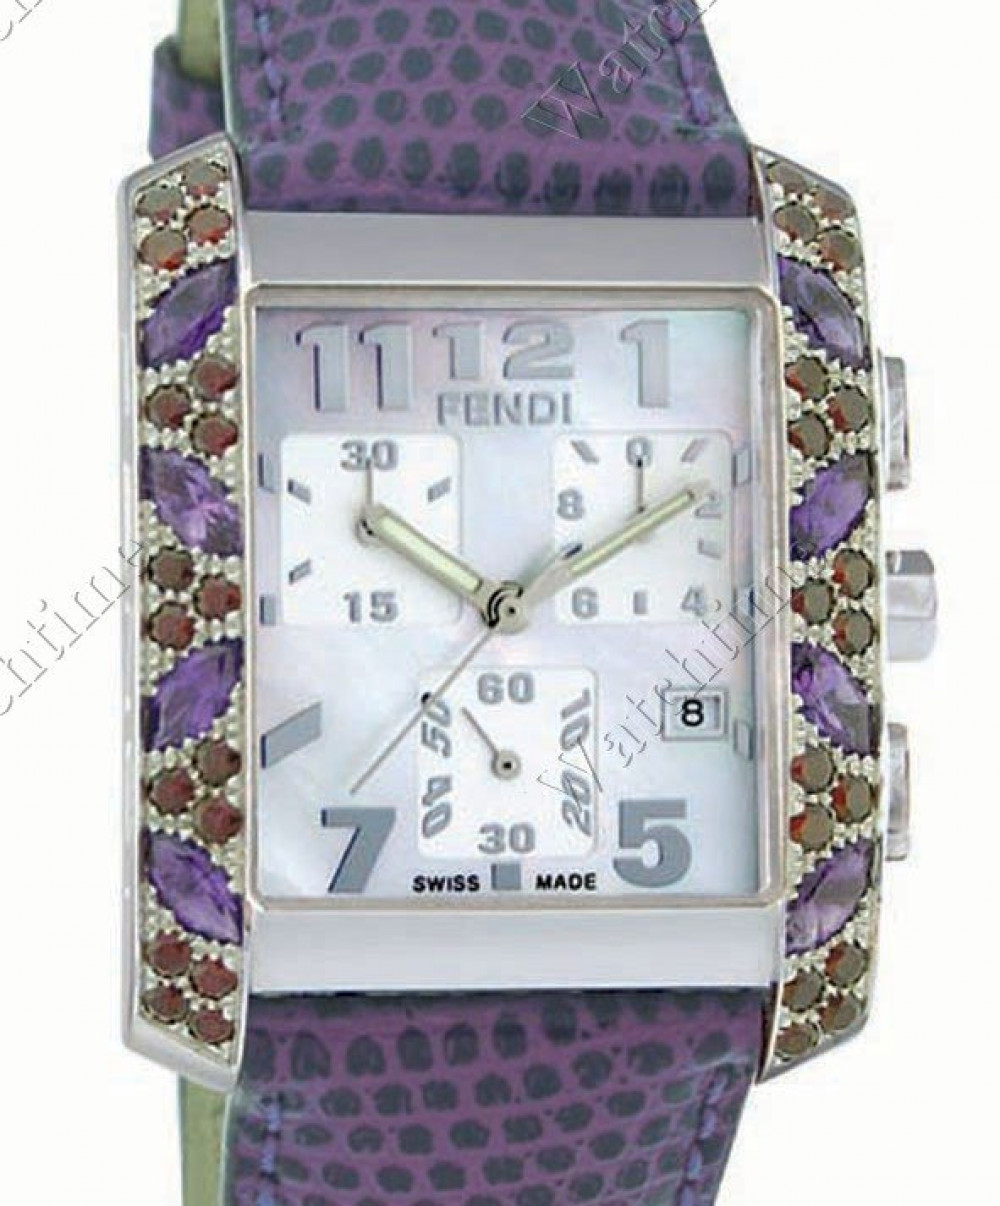 Zegarek firmy Fendi, model Mosaic